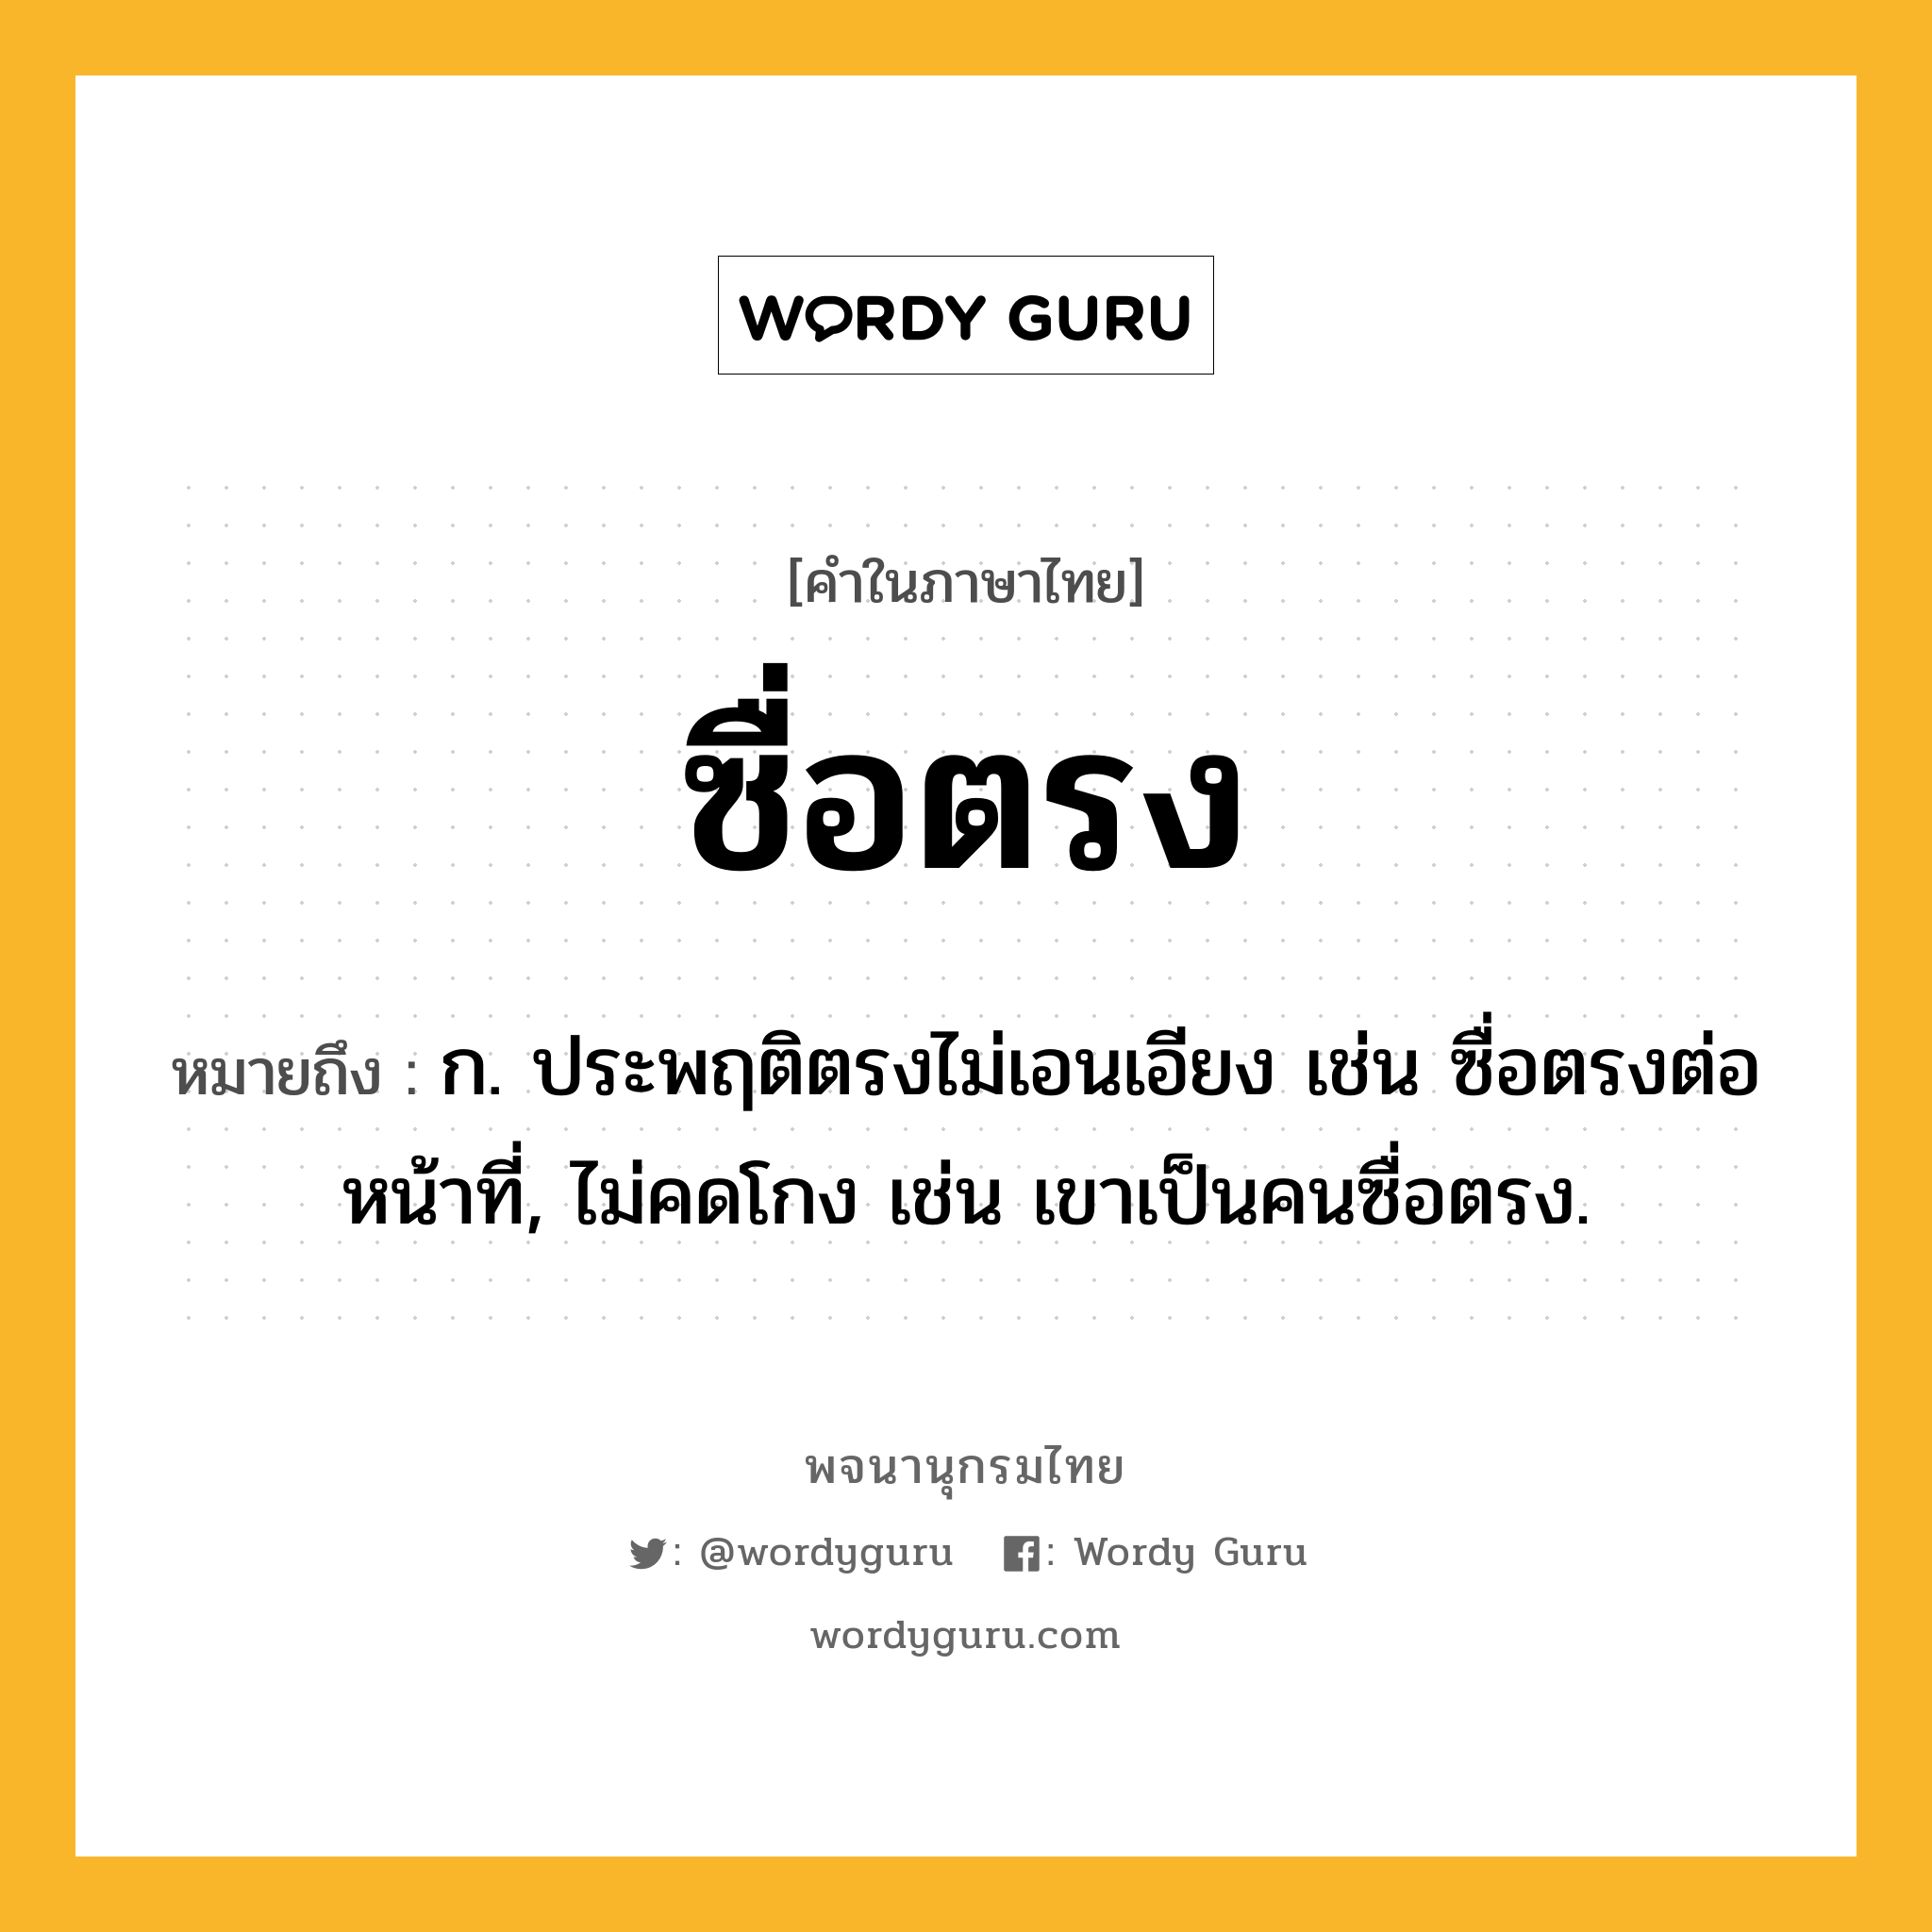 ซื่อตรง ความหมาย หมายถึงอะไร?, คำในภาษาไทย ซื่อตรง หมายถึง ก. ประพฤติตรงไม่เอนเอียง เช่น ซื่อตรงต่อหน้าที่, ไม่คดโกง เช่น เขาเป็นคนซื่อตรง.